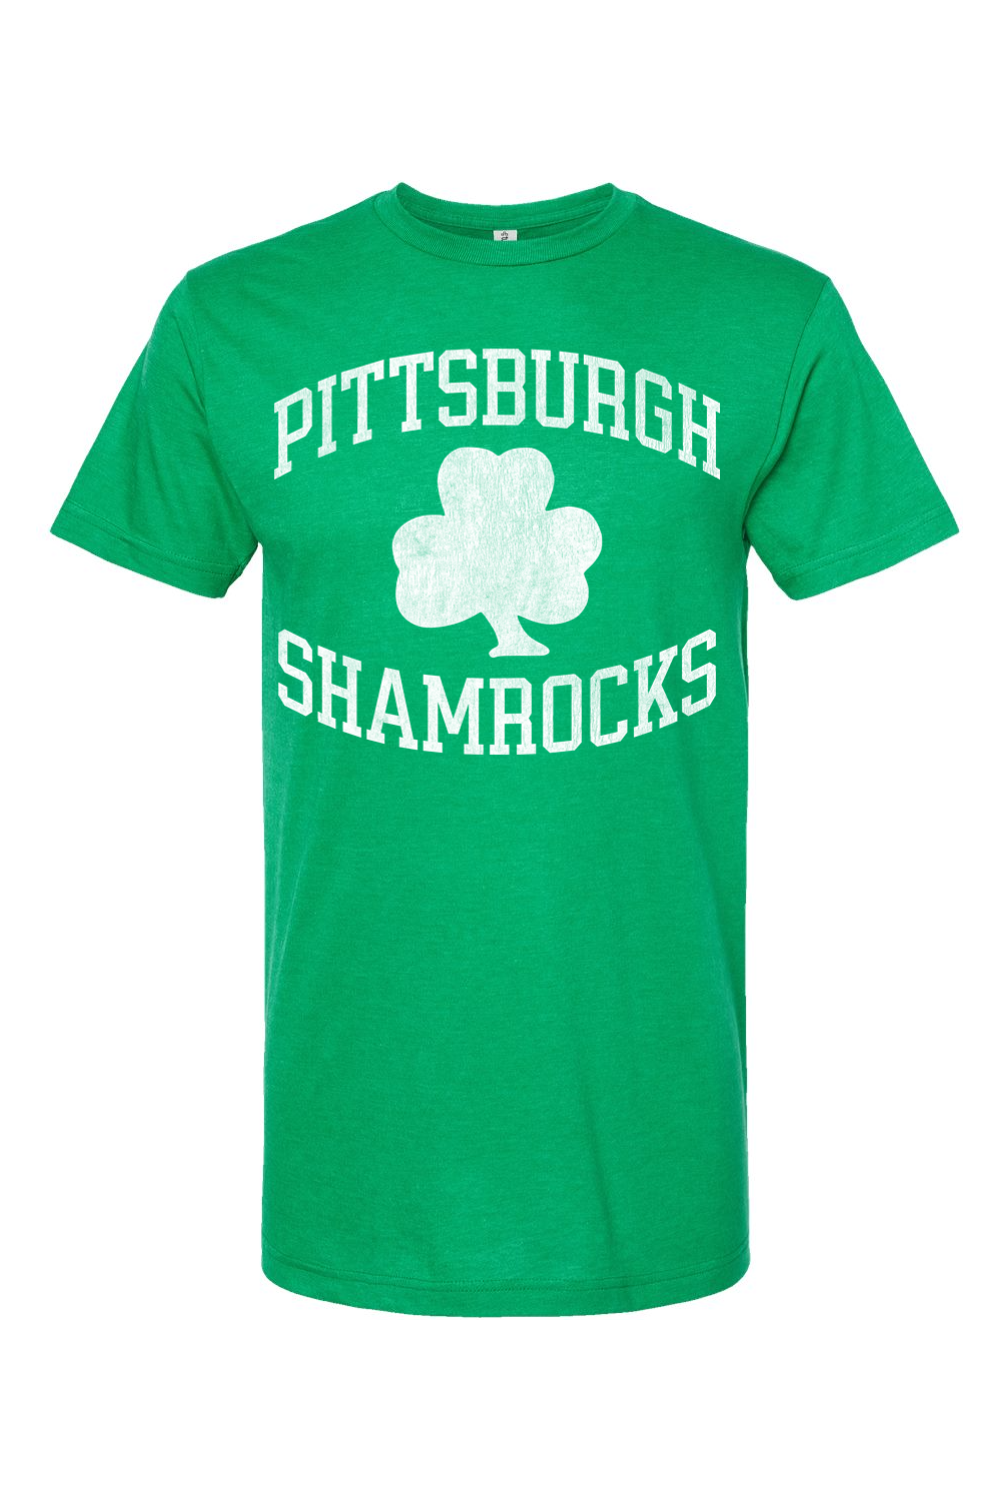 Pittsburgh Shamrocks Hockey - Yinzylvania